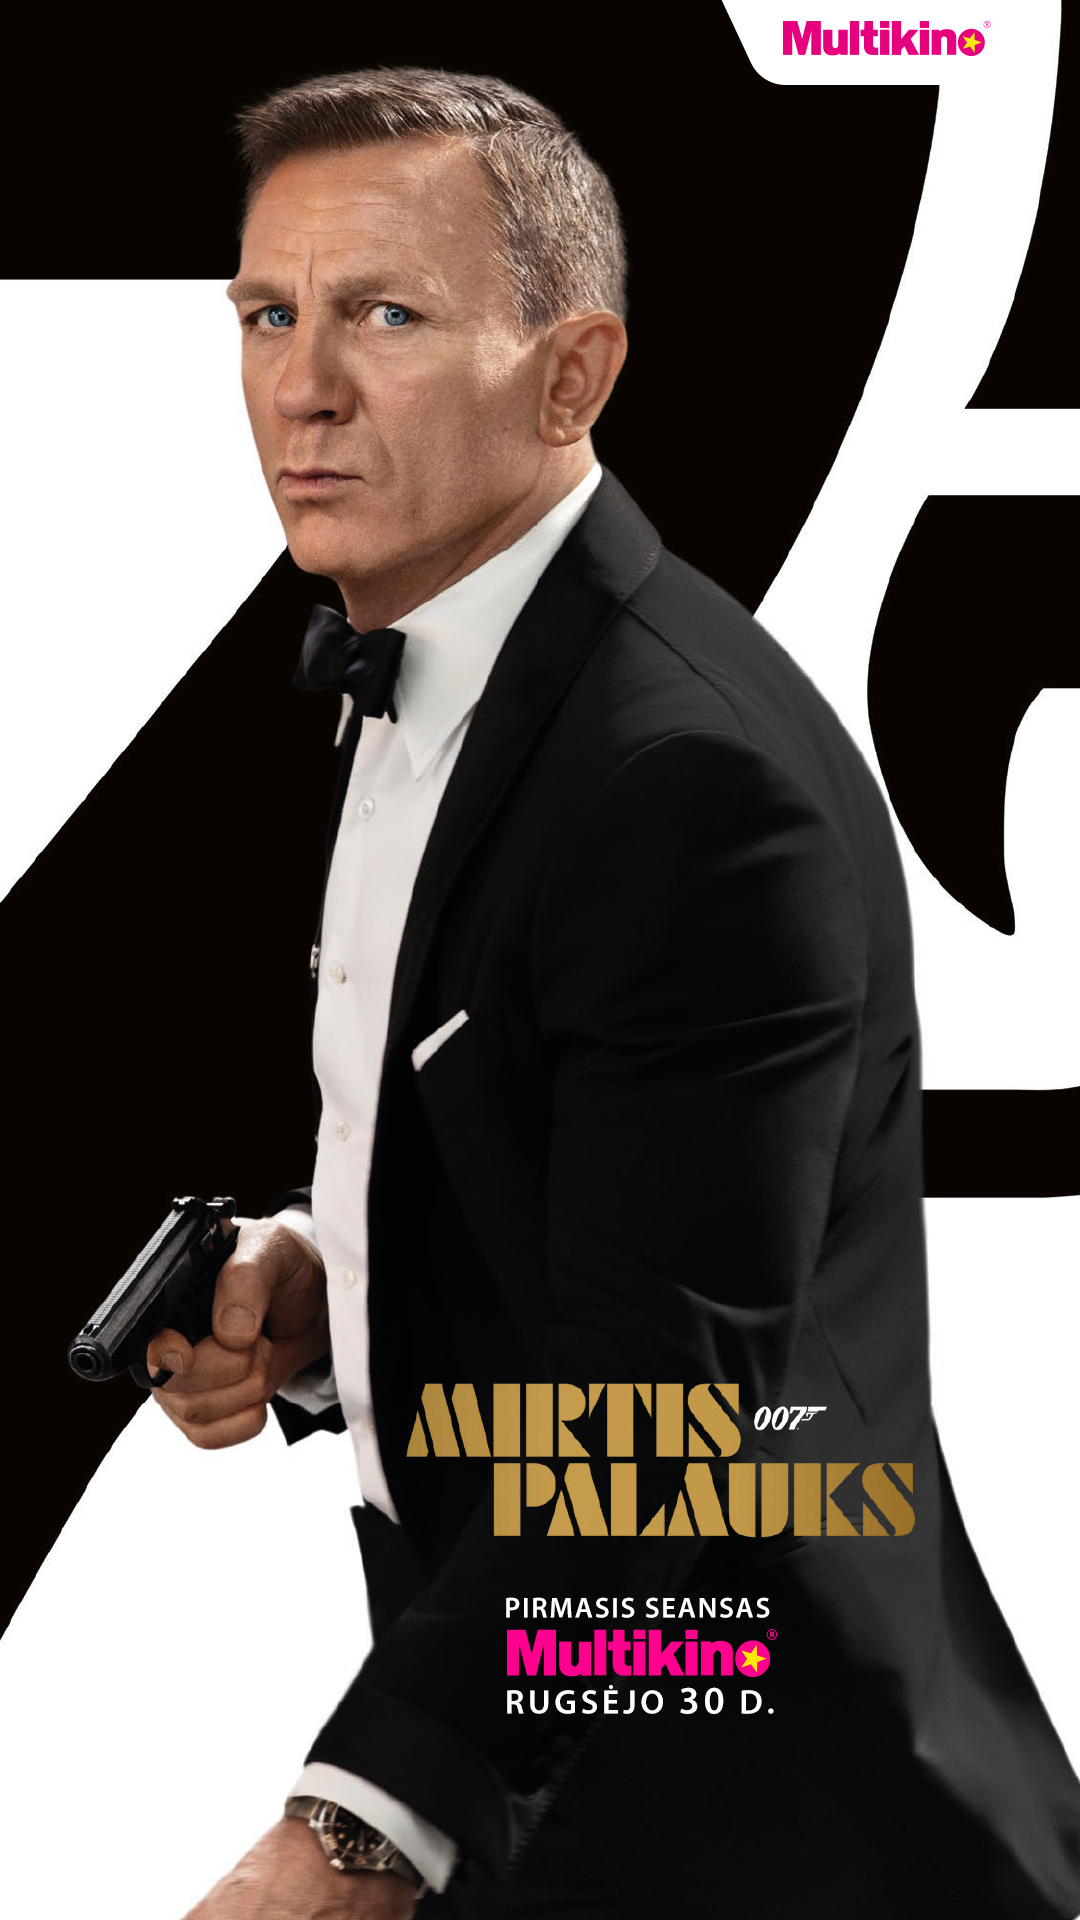 007 MIRTIS PALAUKS (007 No Time to Die)